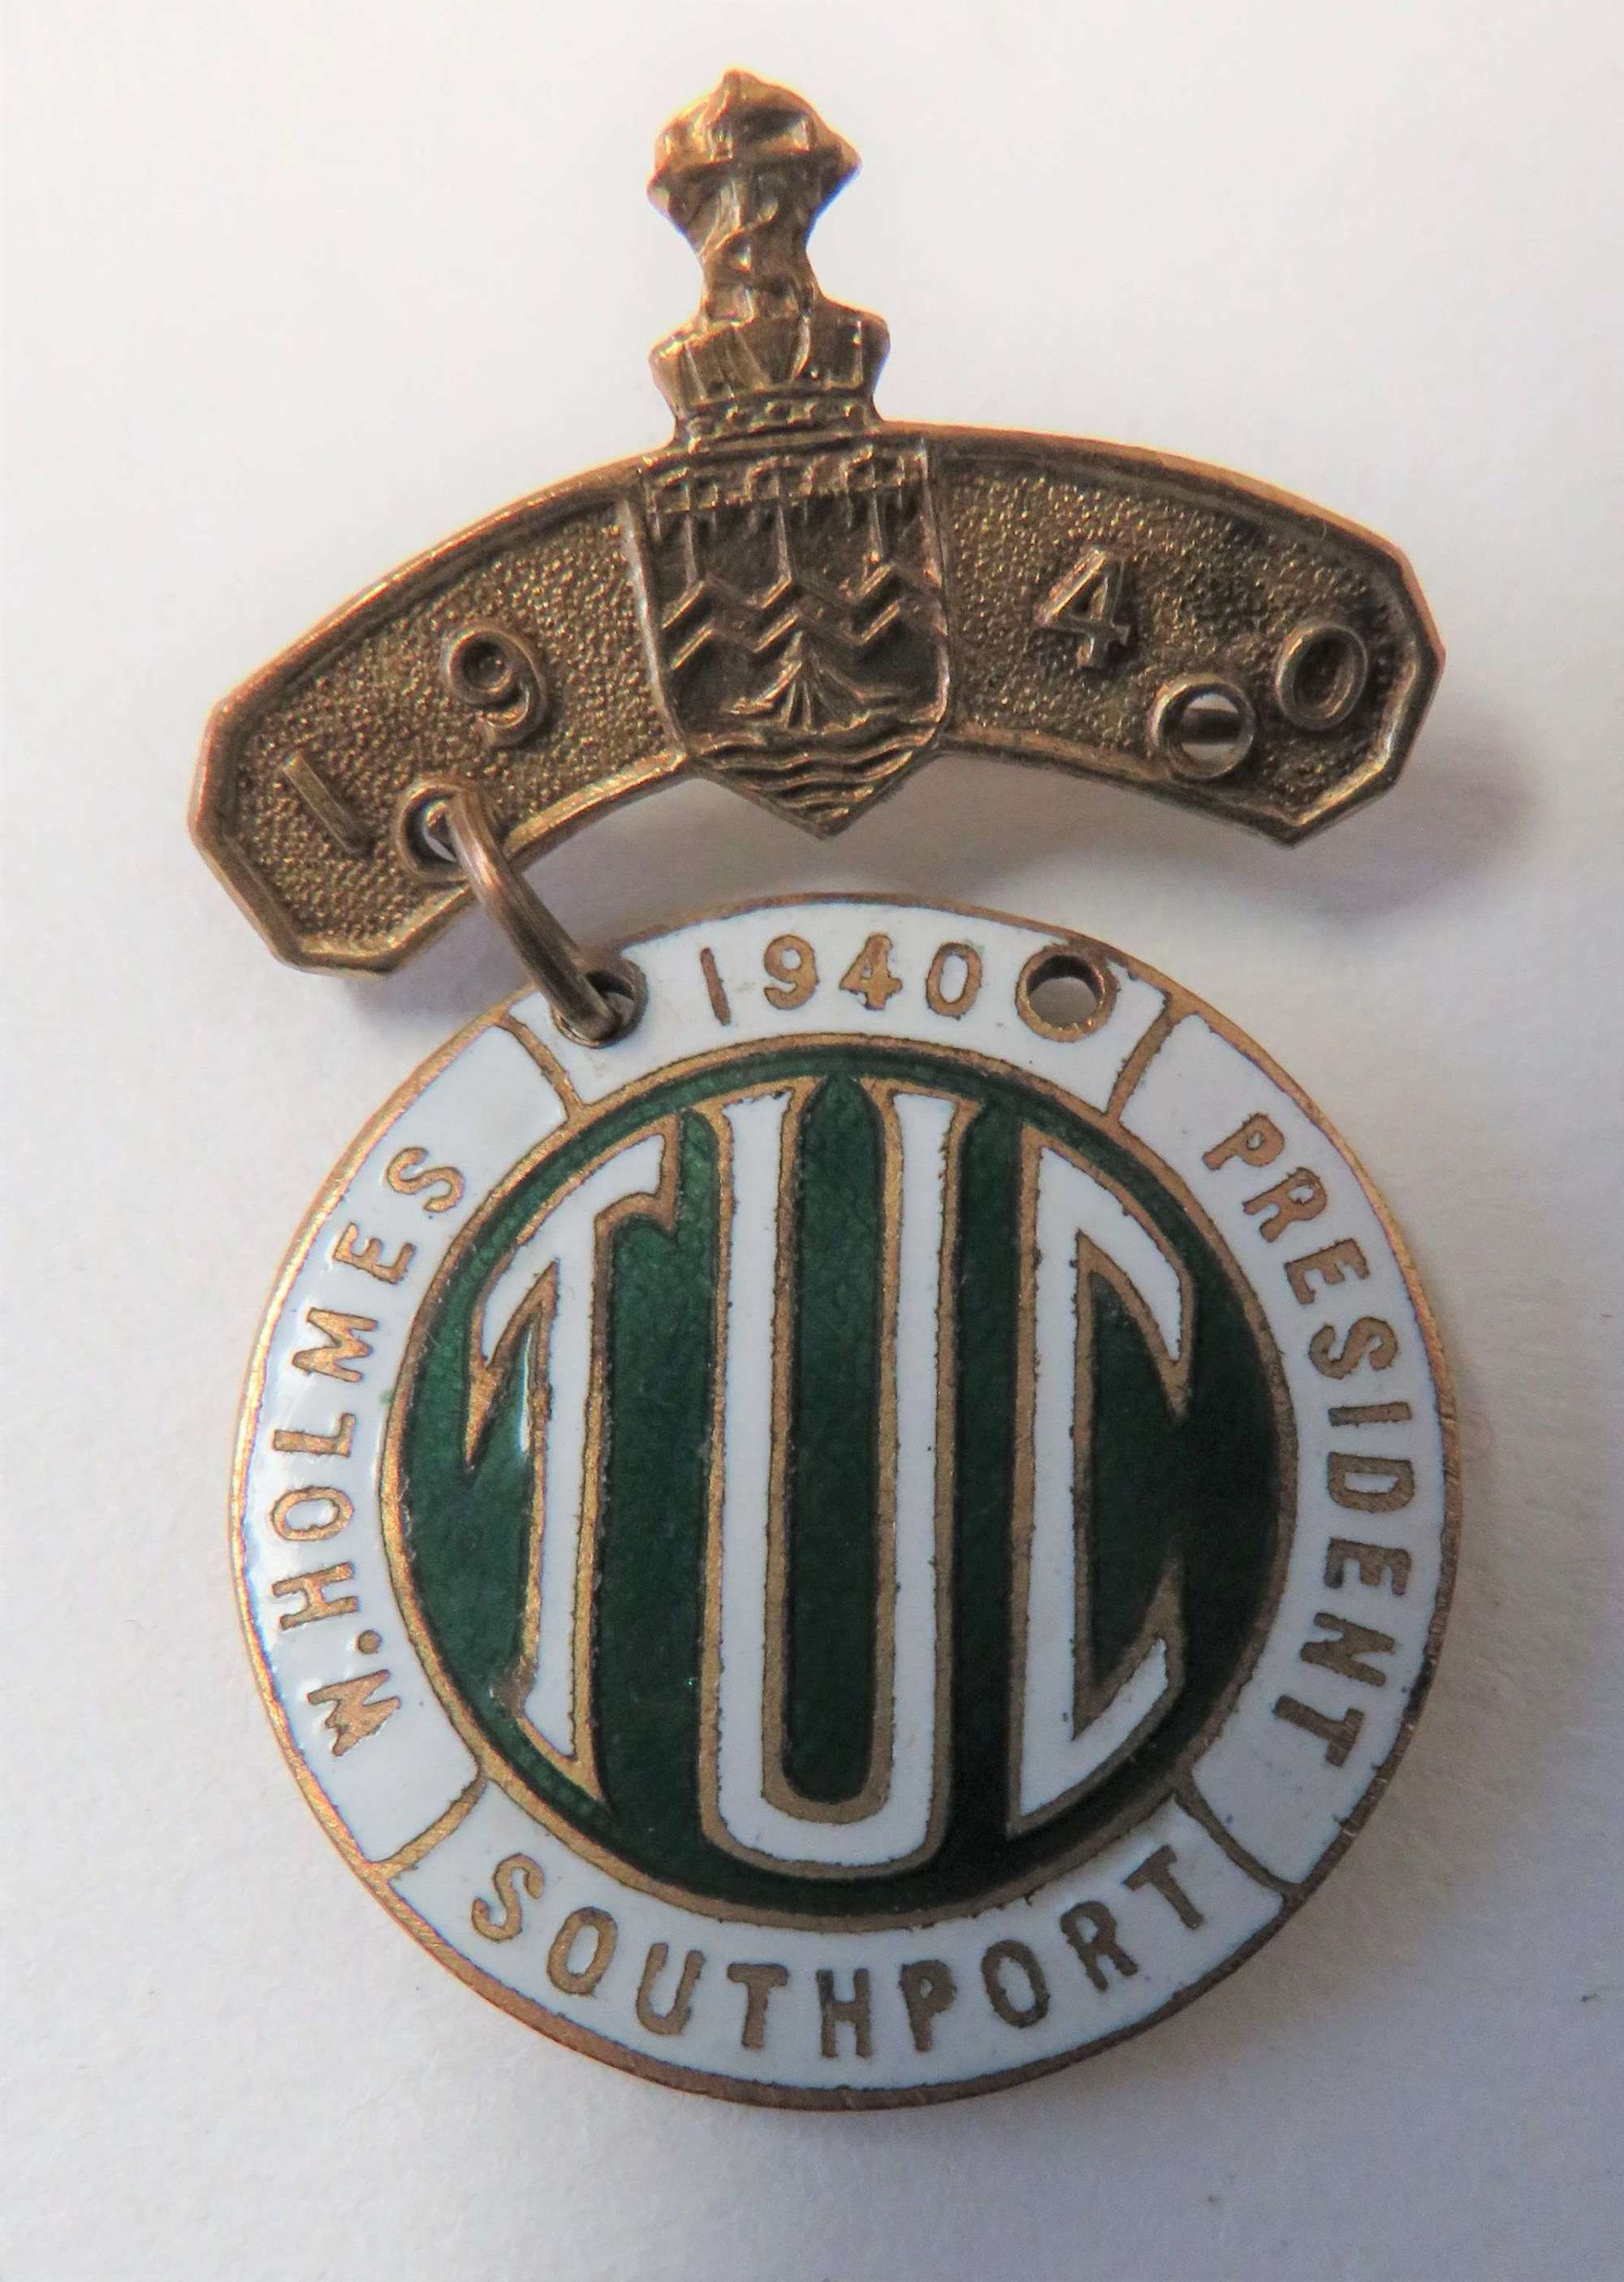 1940 Southport T.U.C Badge